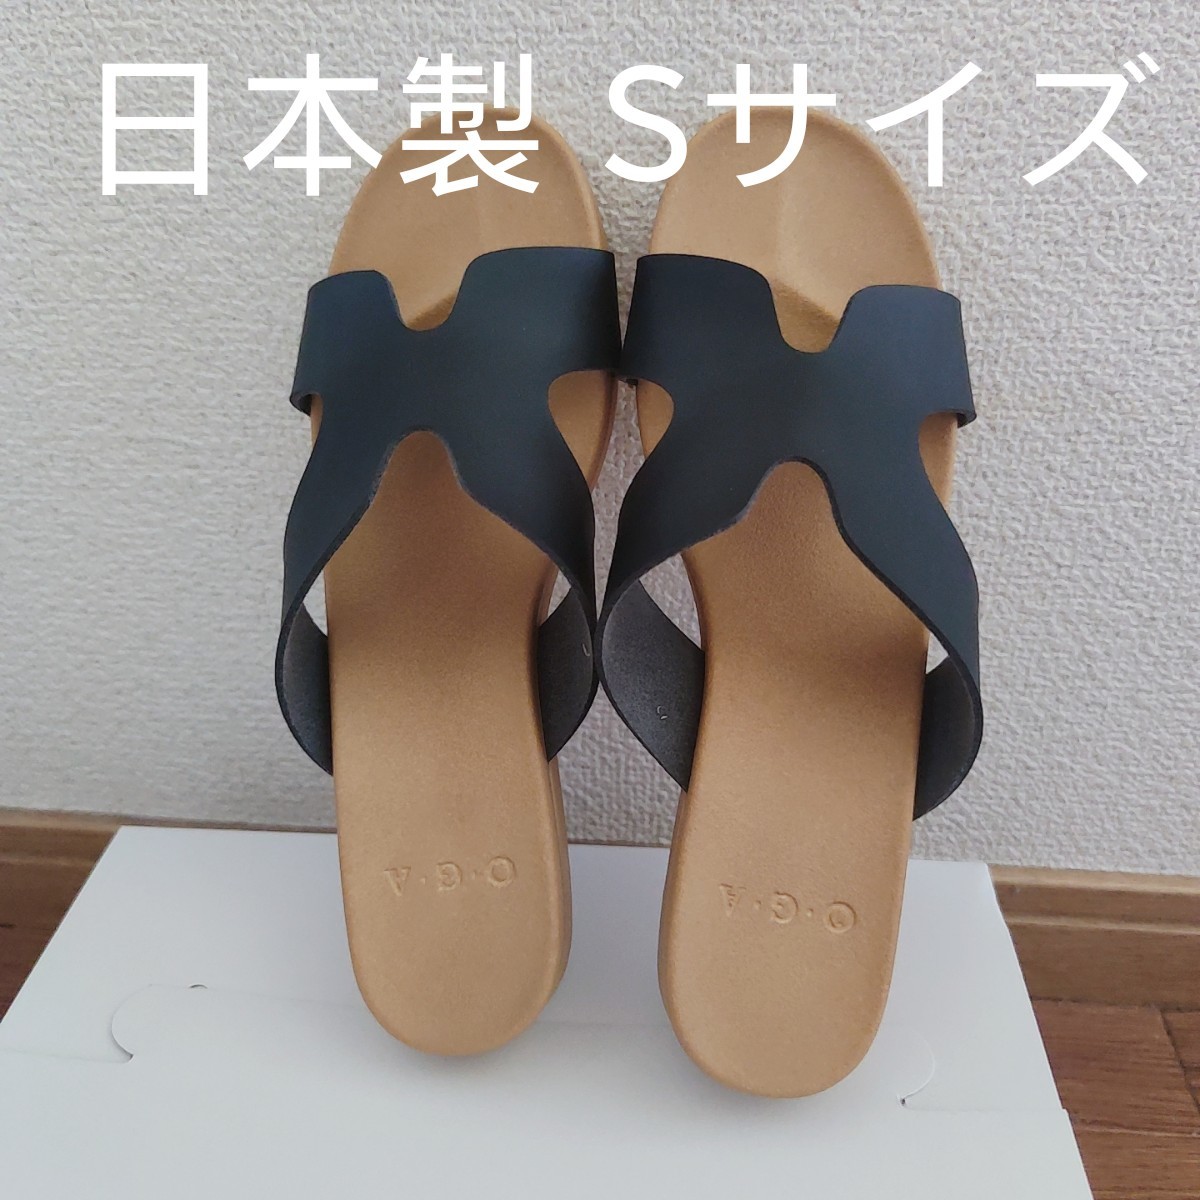 サンダル フラット 柔らかいインソール 日本製 ローヒール / 靴 レディースシューズ 婦人靴